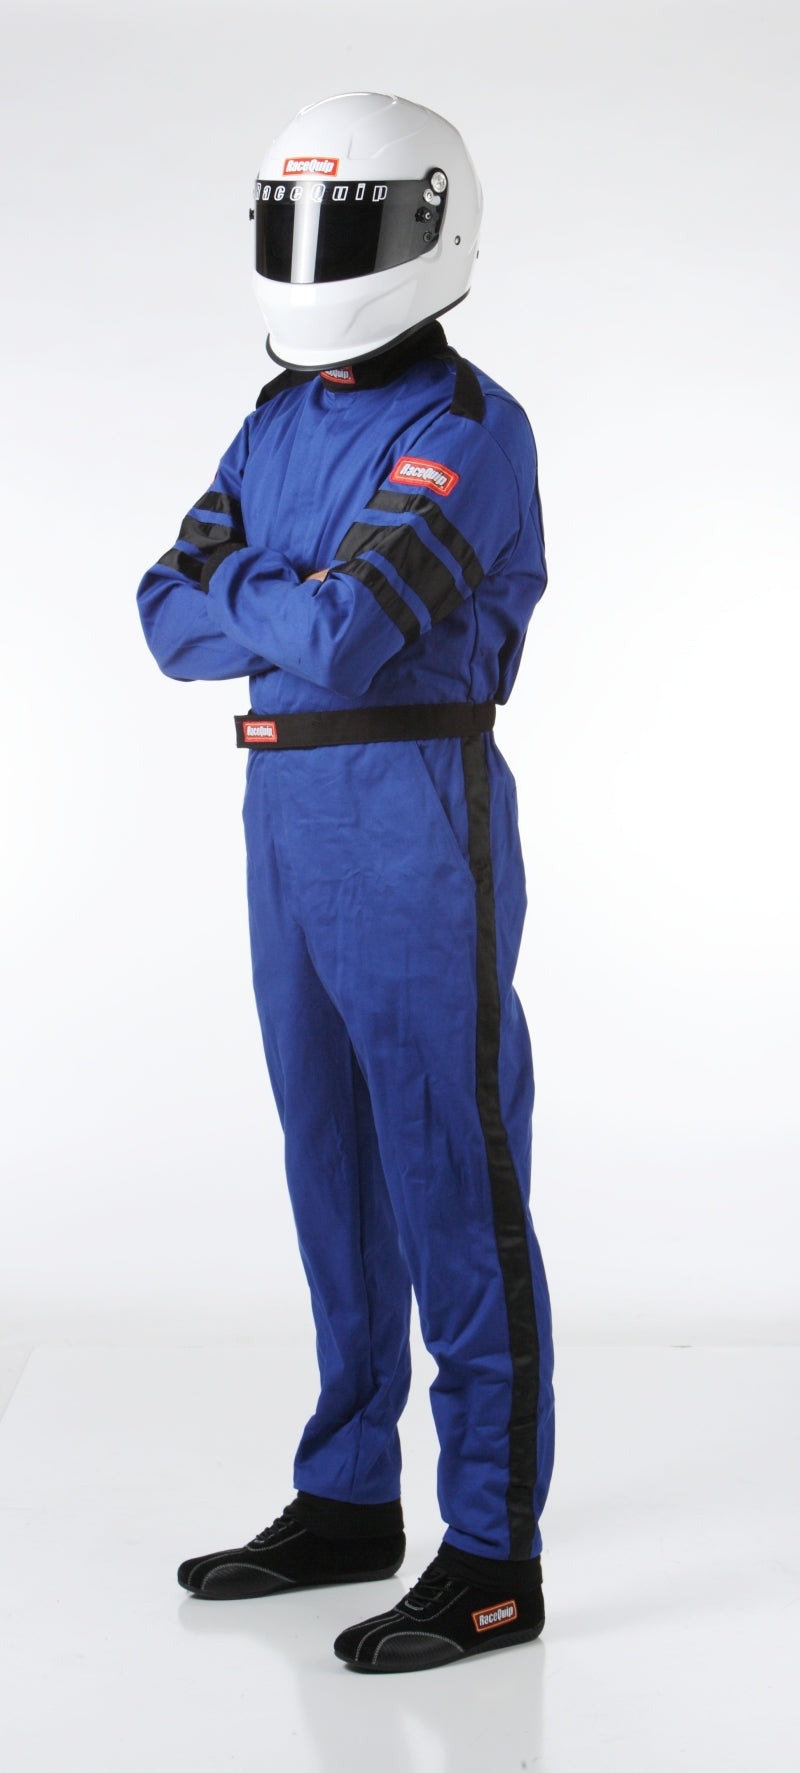 RaceQuip Blue SFI-1 1-L Suit - Small - eliteracefab.com